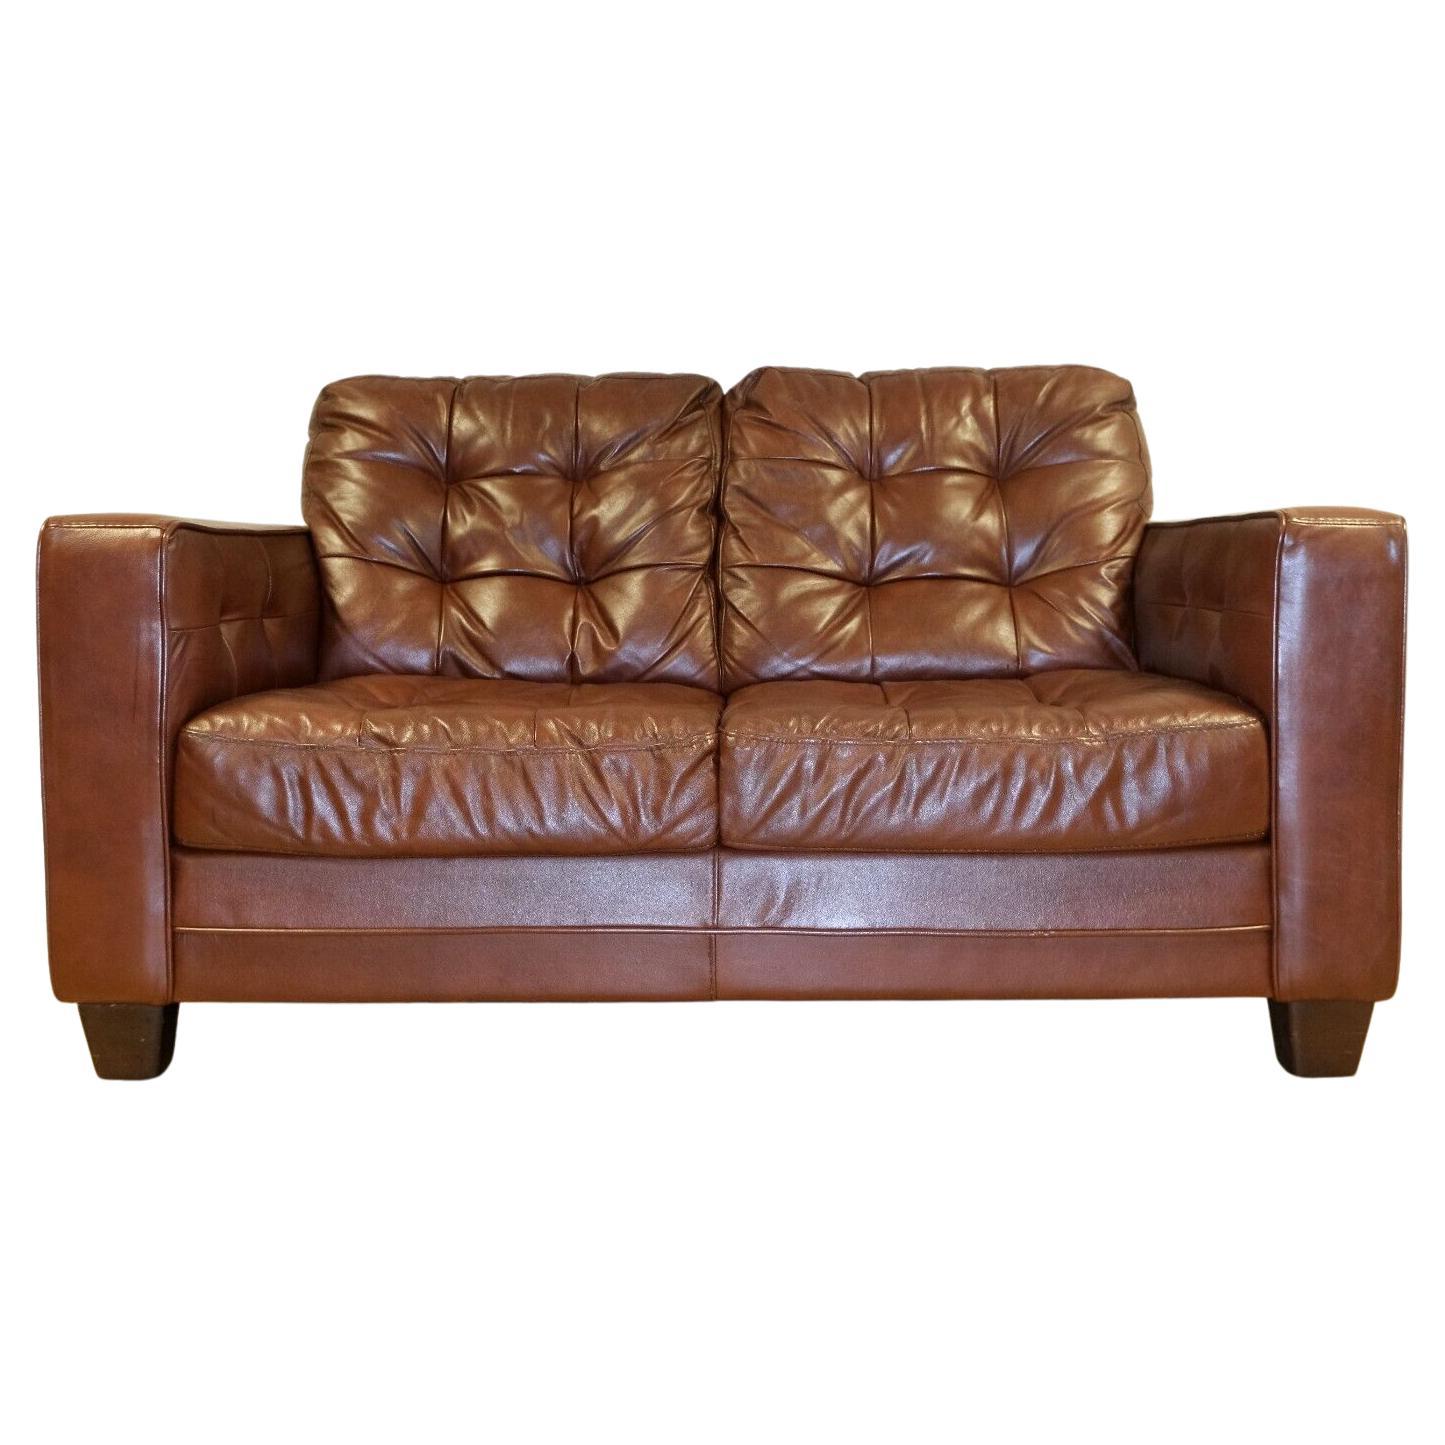 Zwei-Sitzer-Sofa aus braunem Leder im gealterten Knoll-Stil im Chesterfield-Stil mit Knöpfen